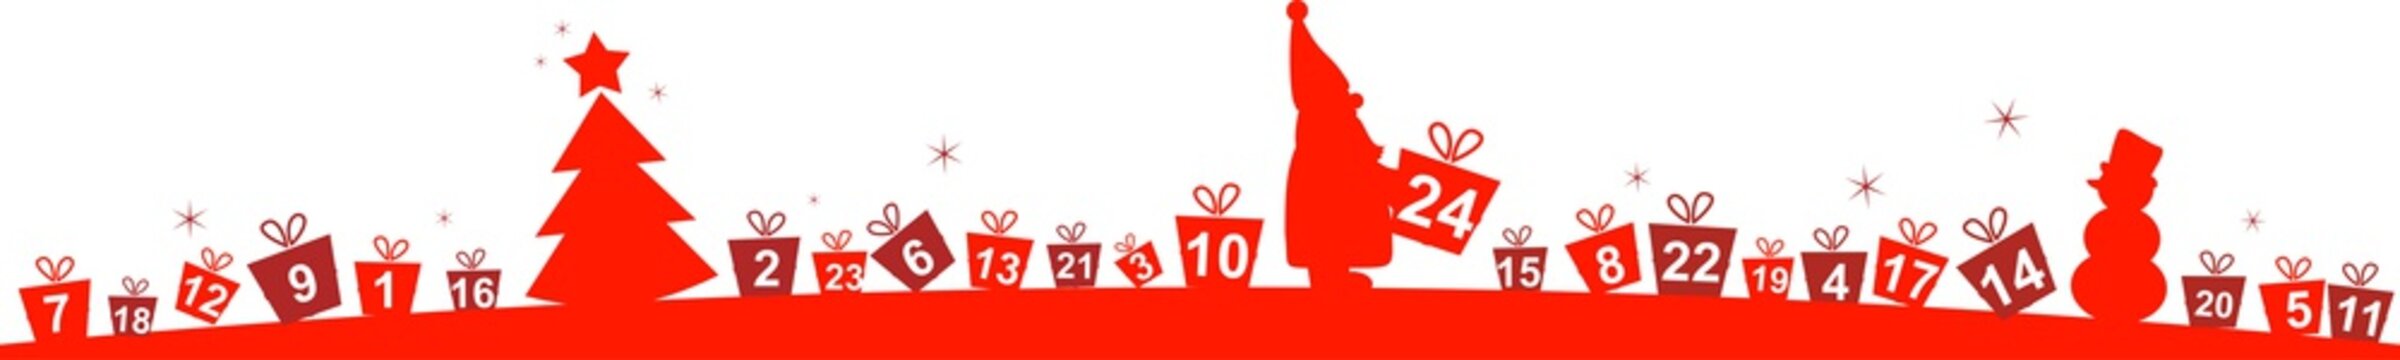 Adventskalender mit Weihnachtsmann und 24 kleinen Geschenken